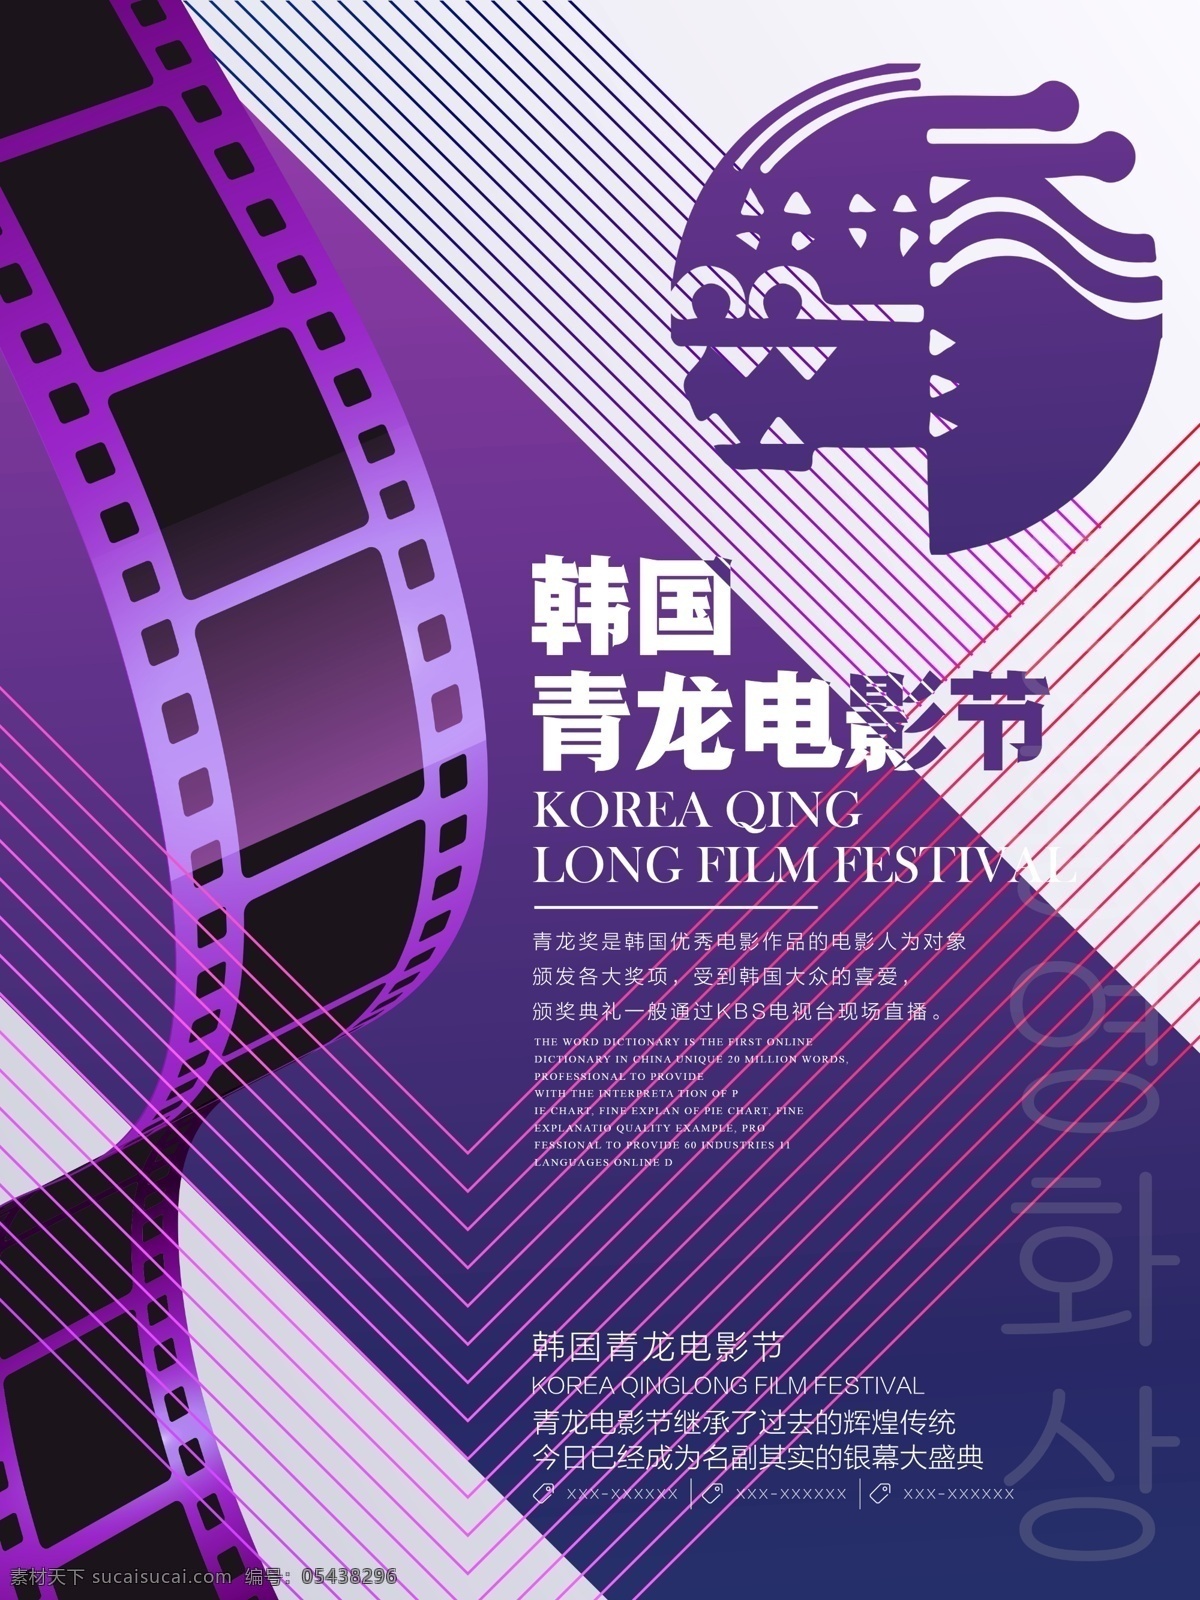 紫色 几何 风 创意 韩国 青龙 电影节 宣传海报 几何风 青龙电影节 韩国电影节 韩国电影展 韩国影展 电影展 国际影展 活动 宣传 海报